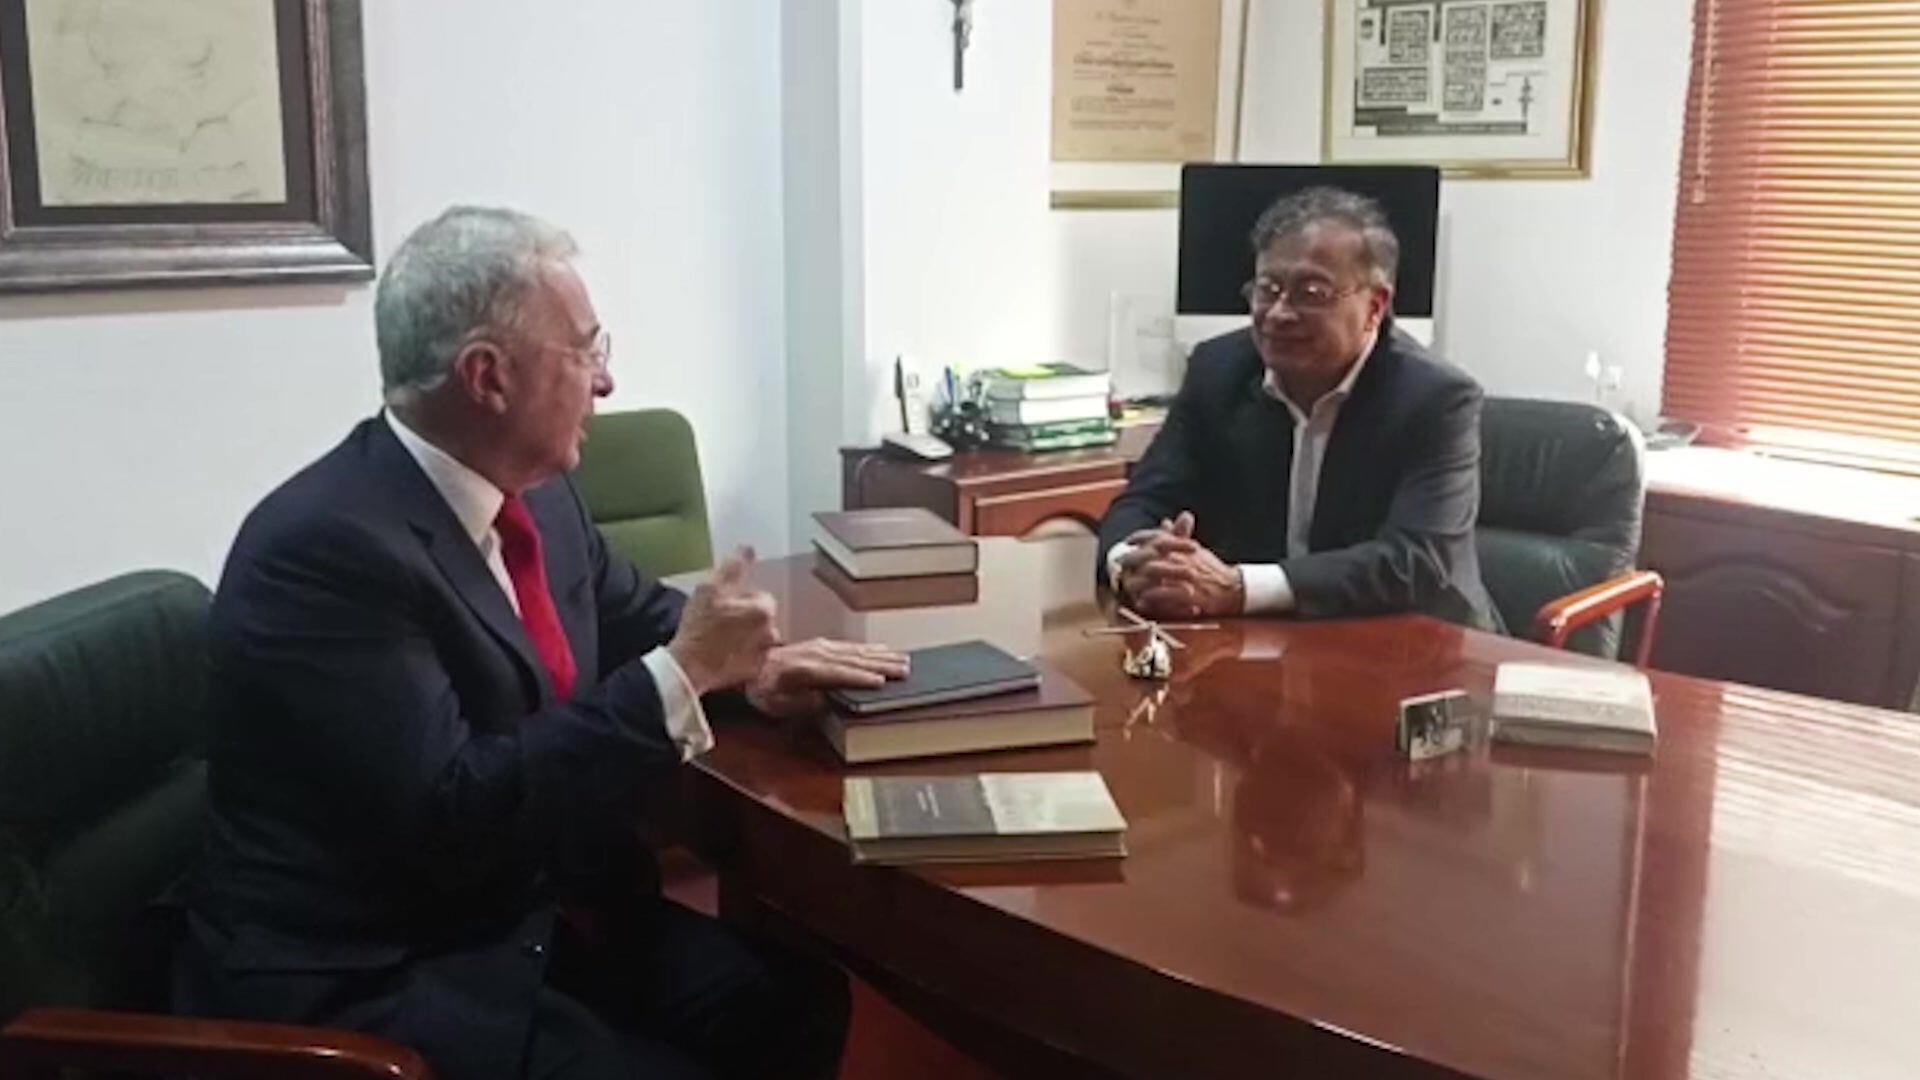 Los dos antagonistas de la política colombiana en este siglo, el expresidente Álvaro Uribe y el mandatario electo de izquierda, Gustavo Petro, tendieron puentes de diálogo en su primera reunión cara a cara el miércoles en Bogotá.